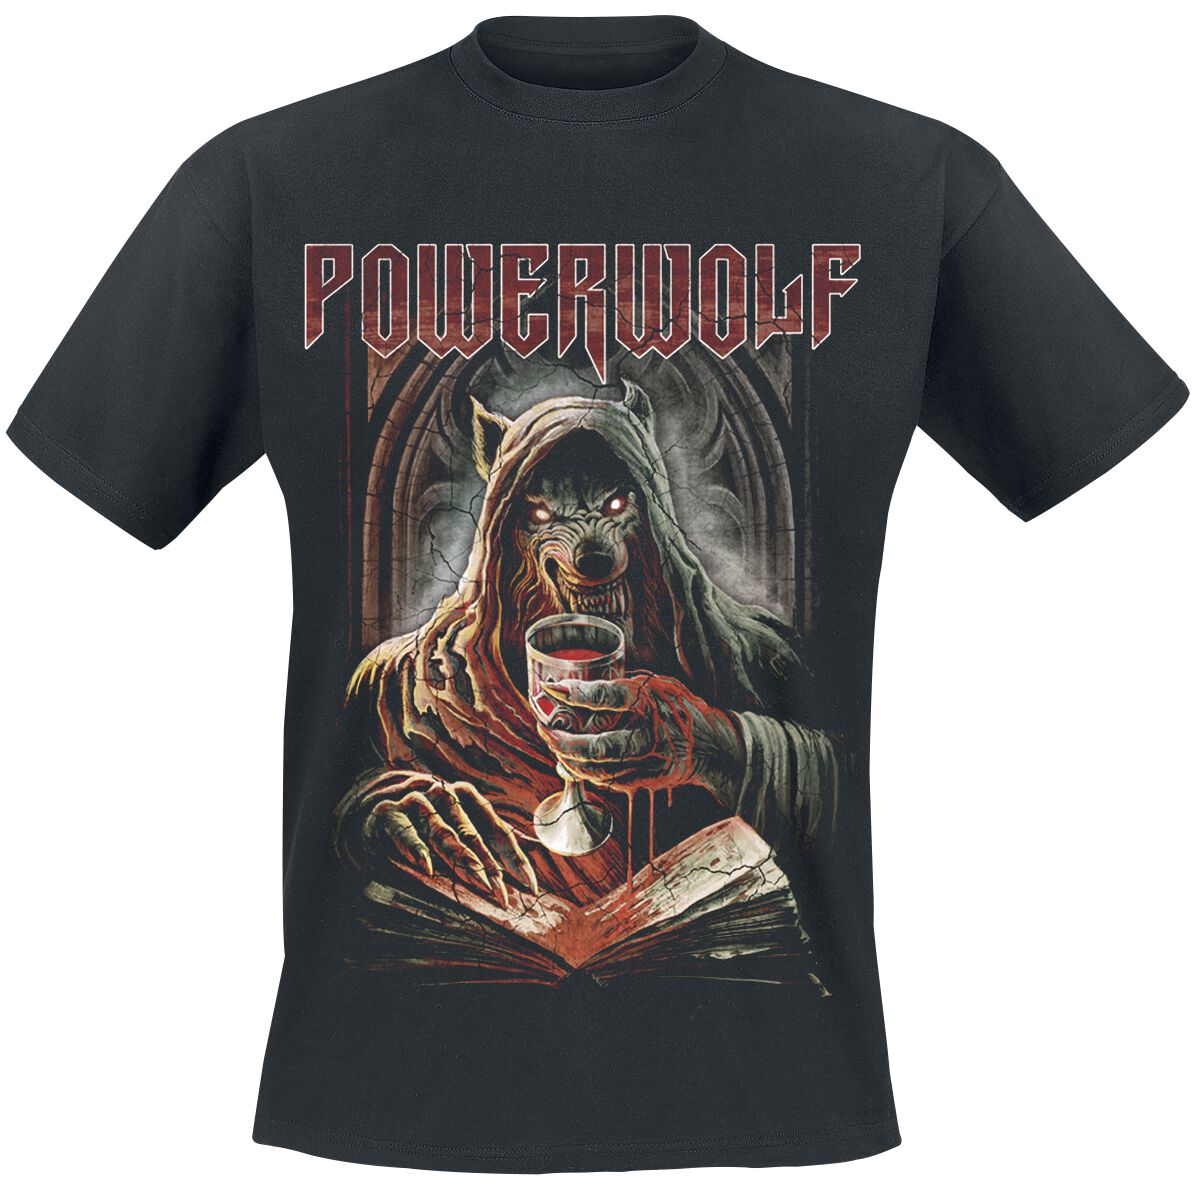 Powerwolf T-Shirt - Your Blood - S bis XXL - für Männer - Größe XL - schwarz  - Lizenziertes Merchandise!